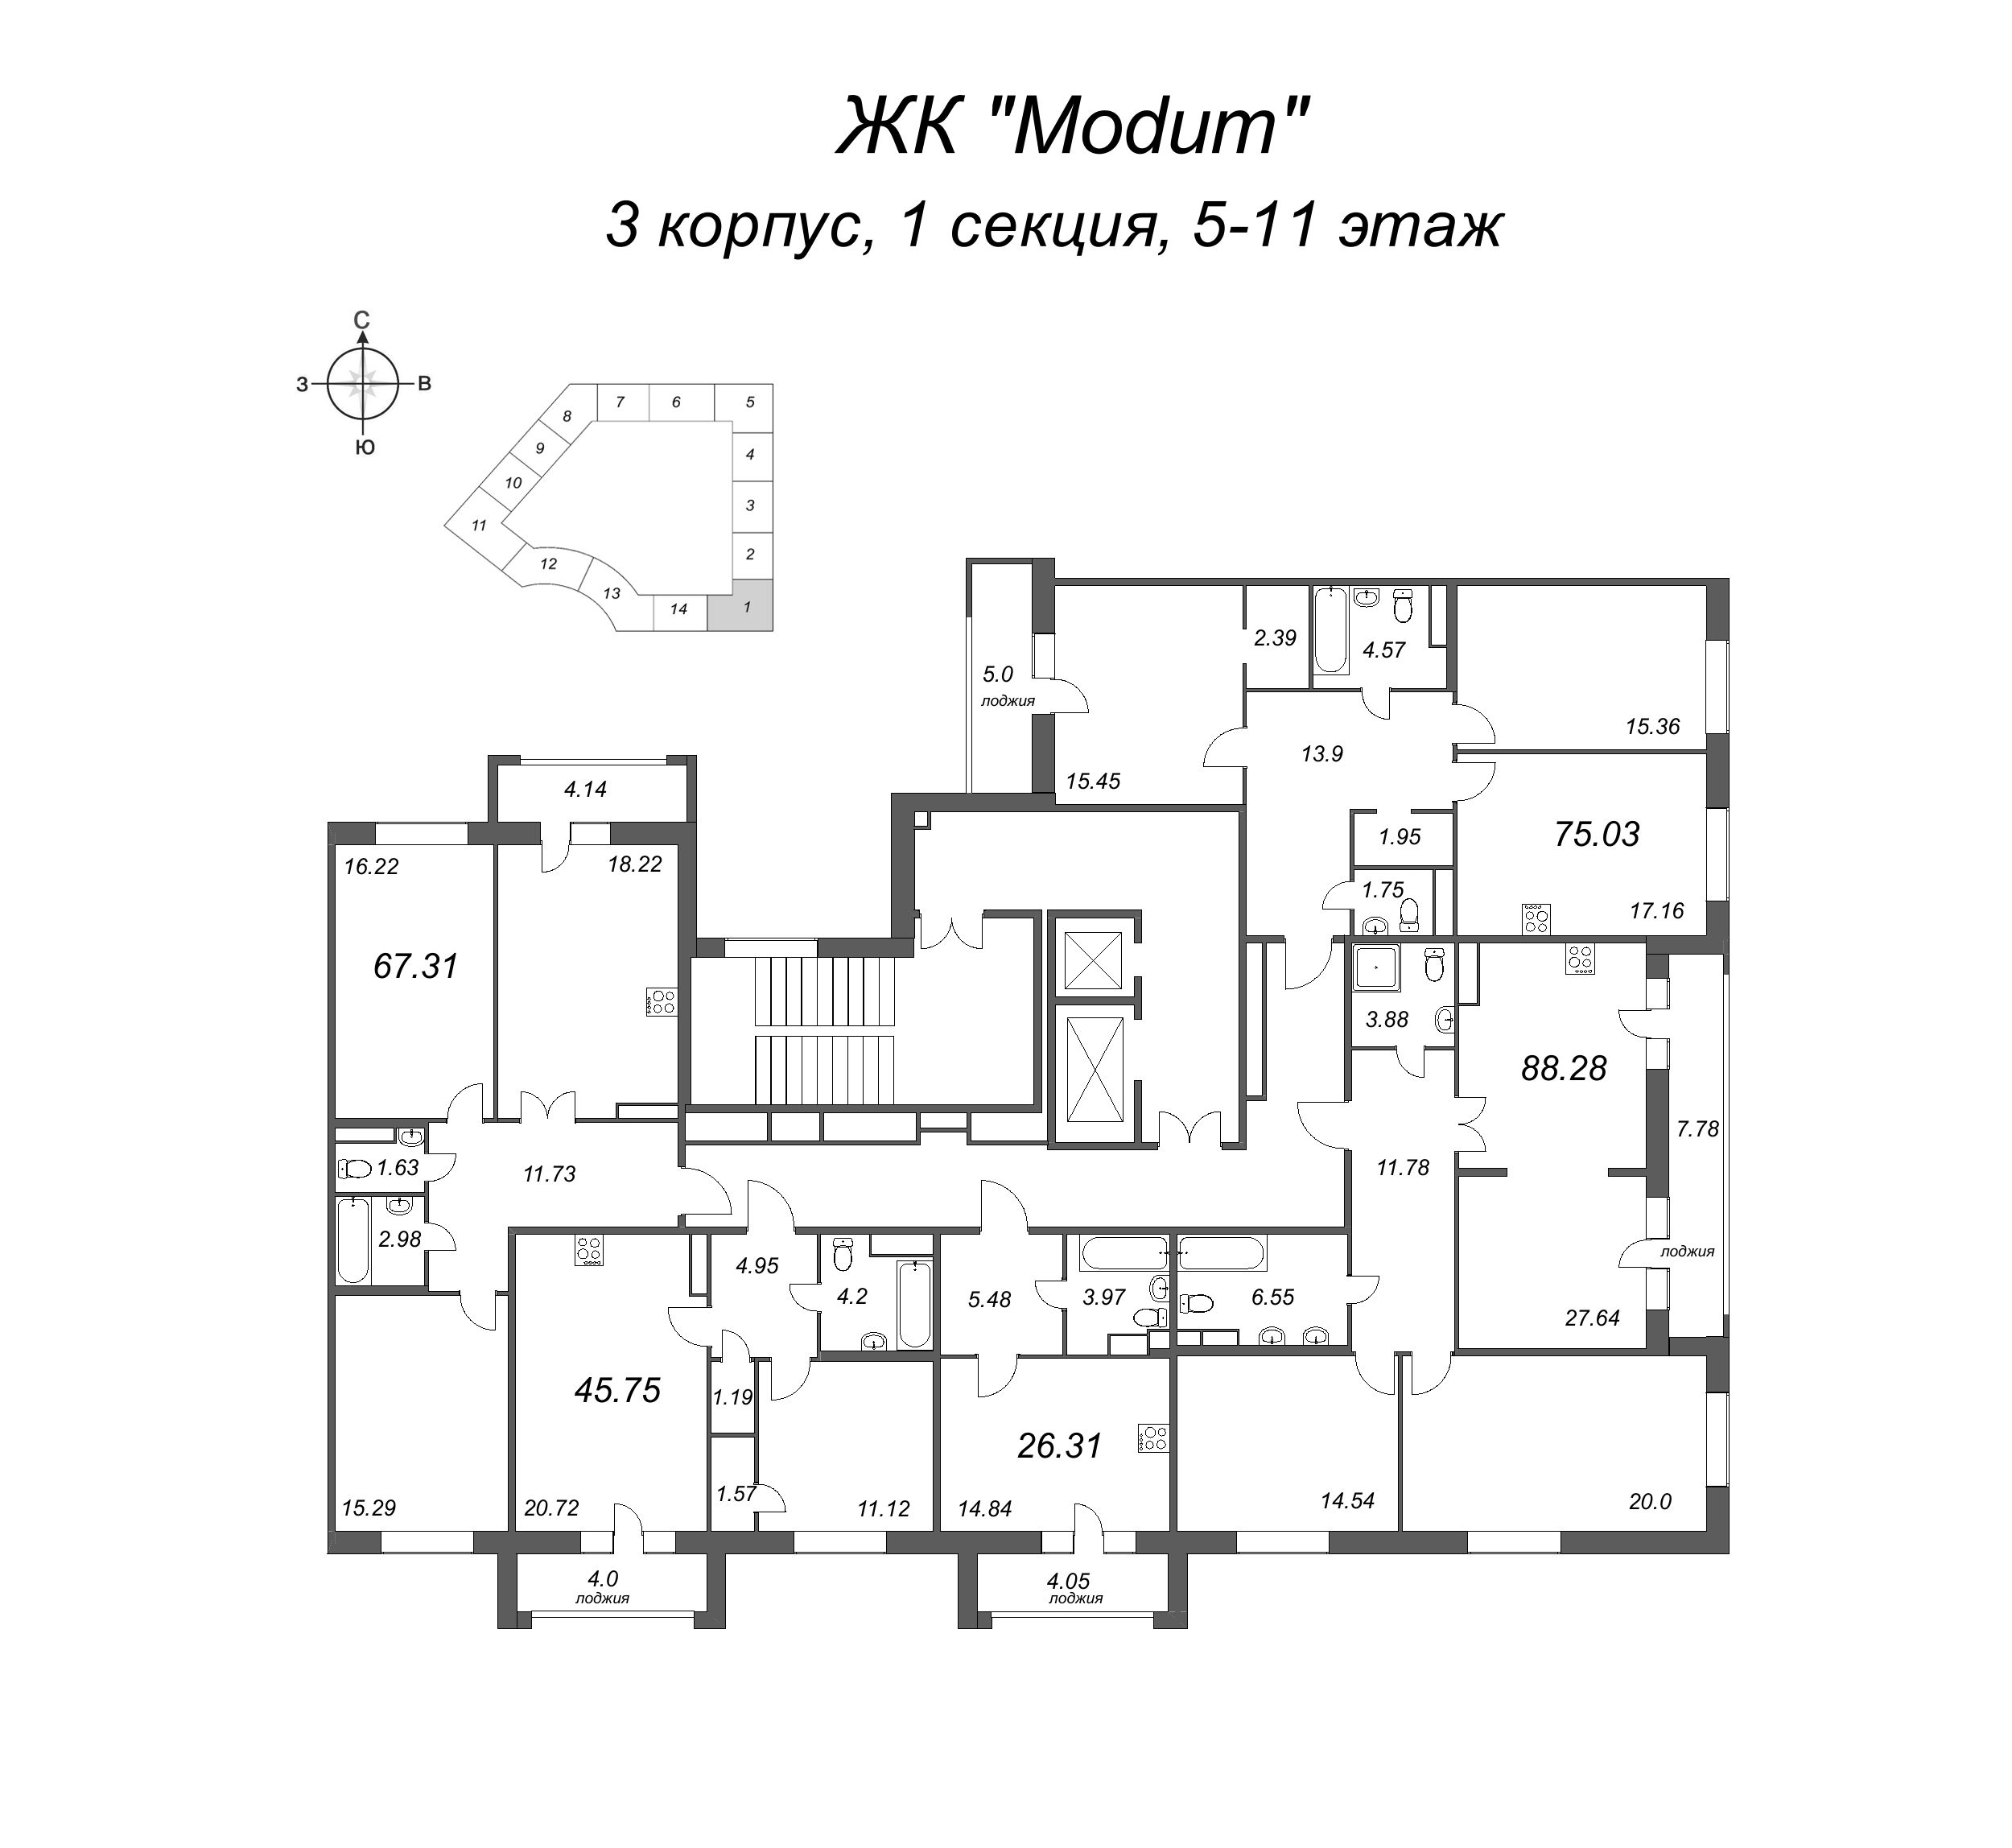 2-комнатная (Евро) квартира, 45.75 м² в ЖК "Modum" - планировка этажа